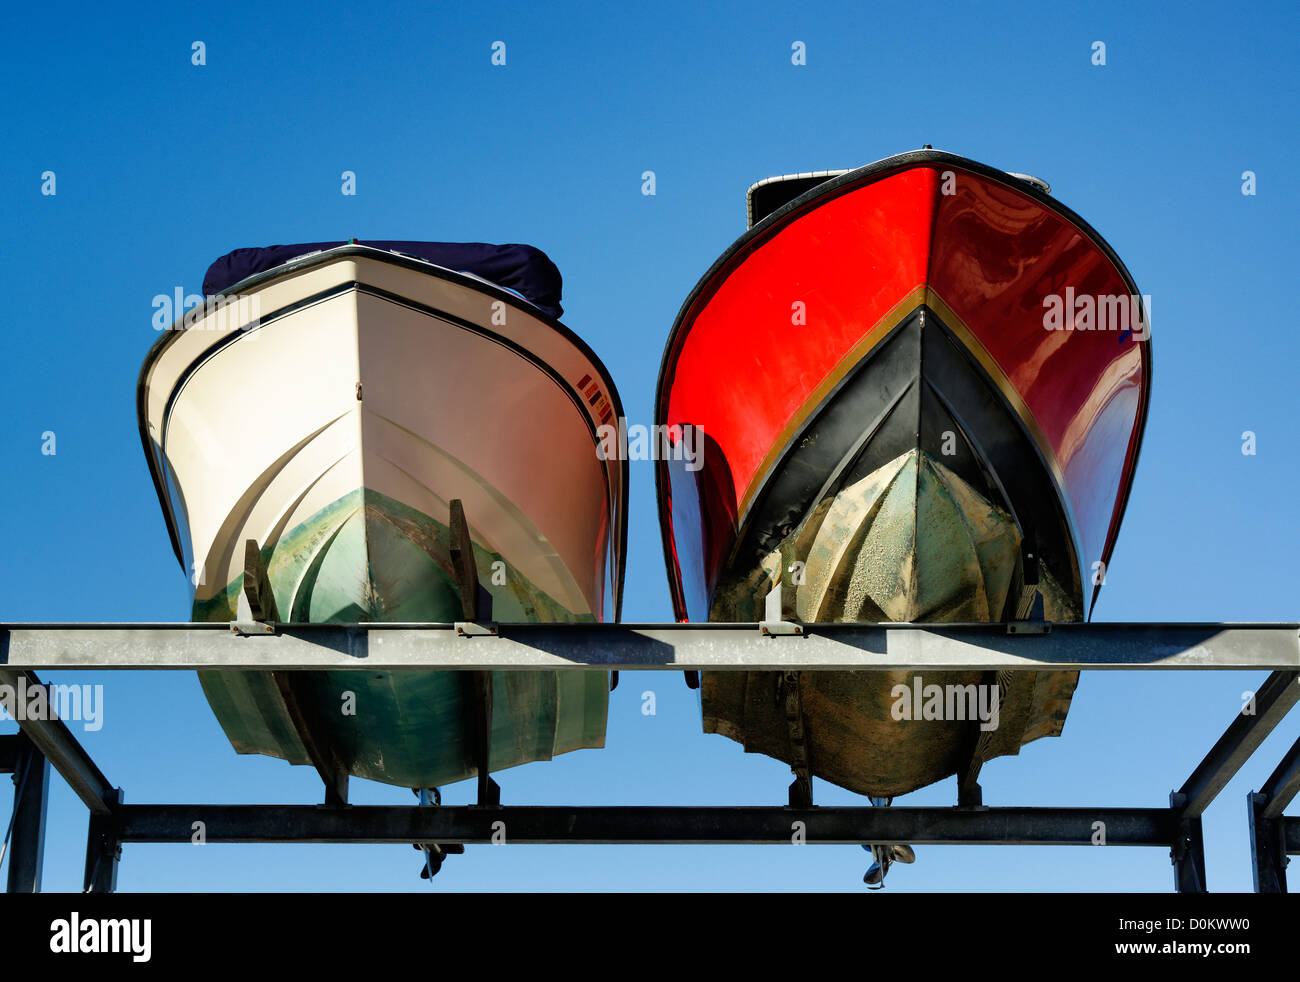 Drydocked motor boats. Stock Photo